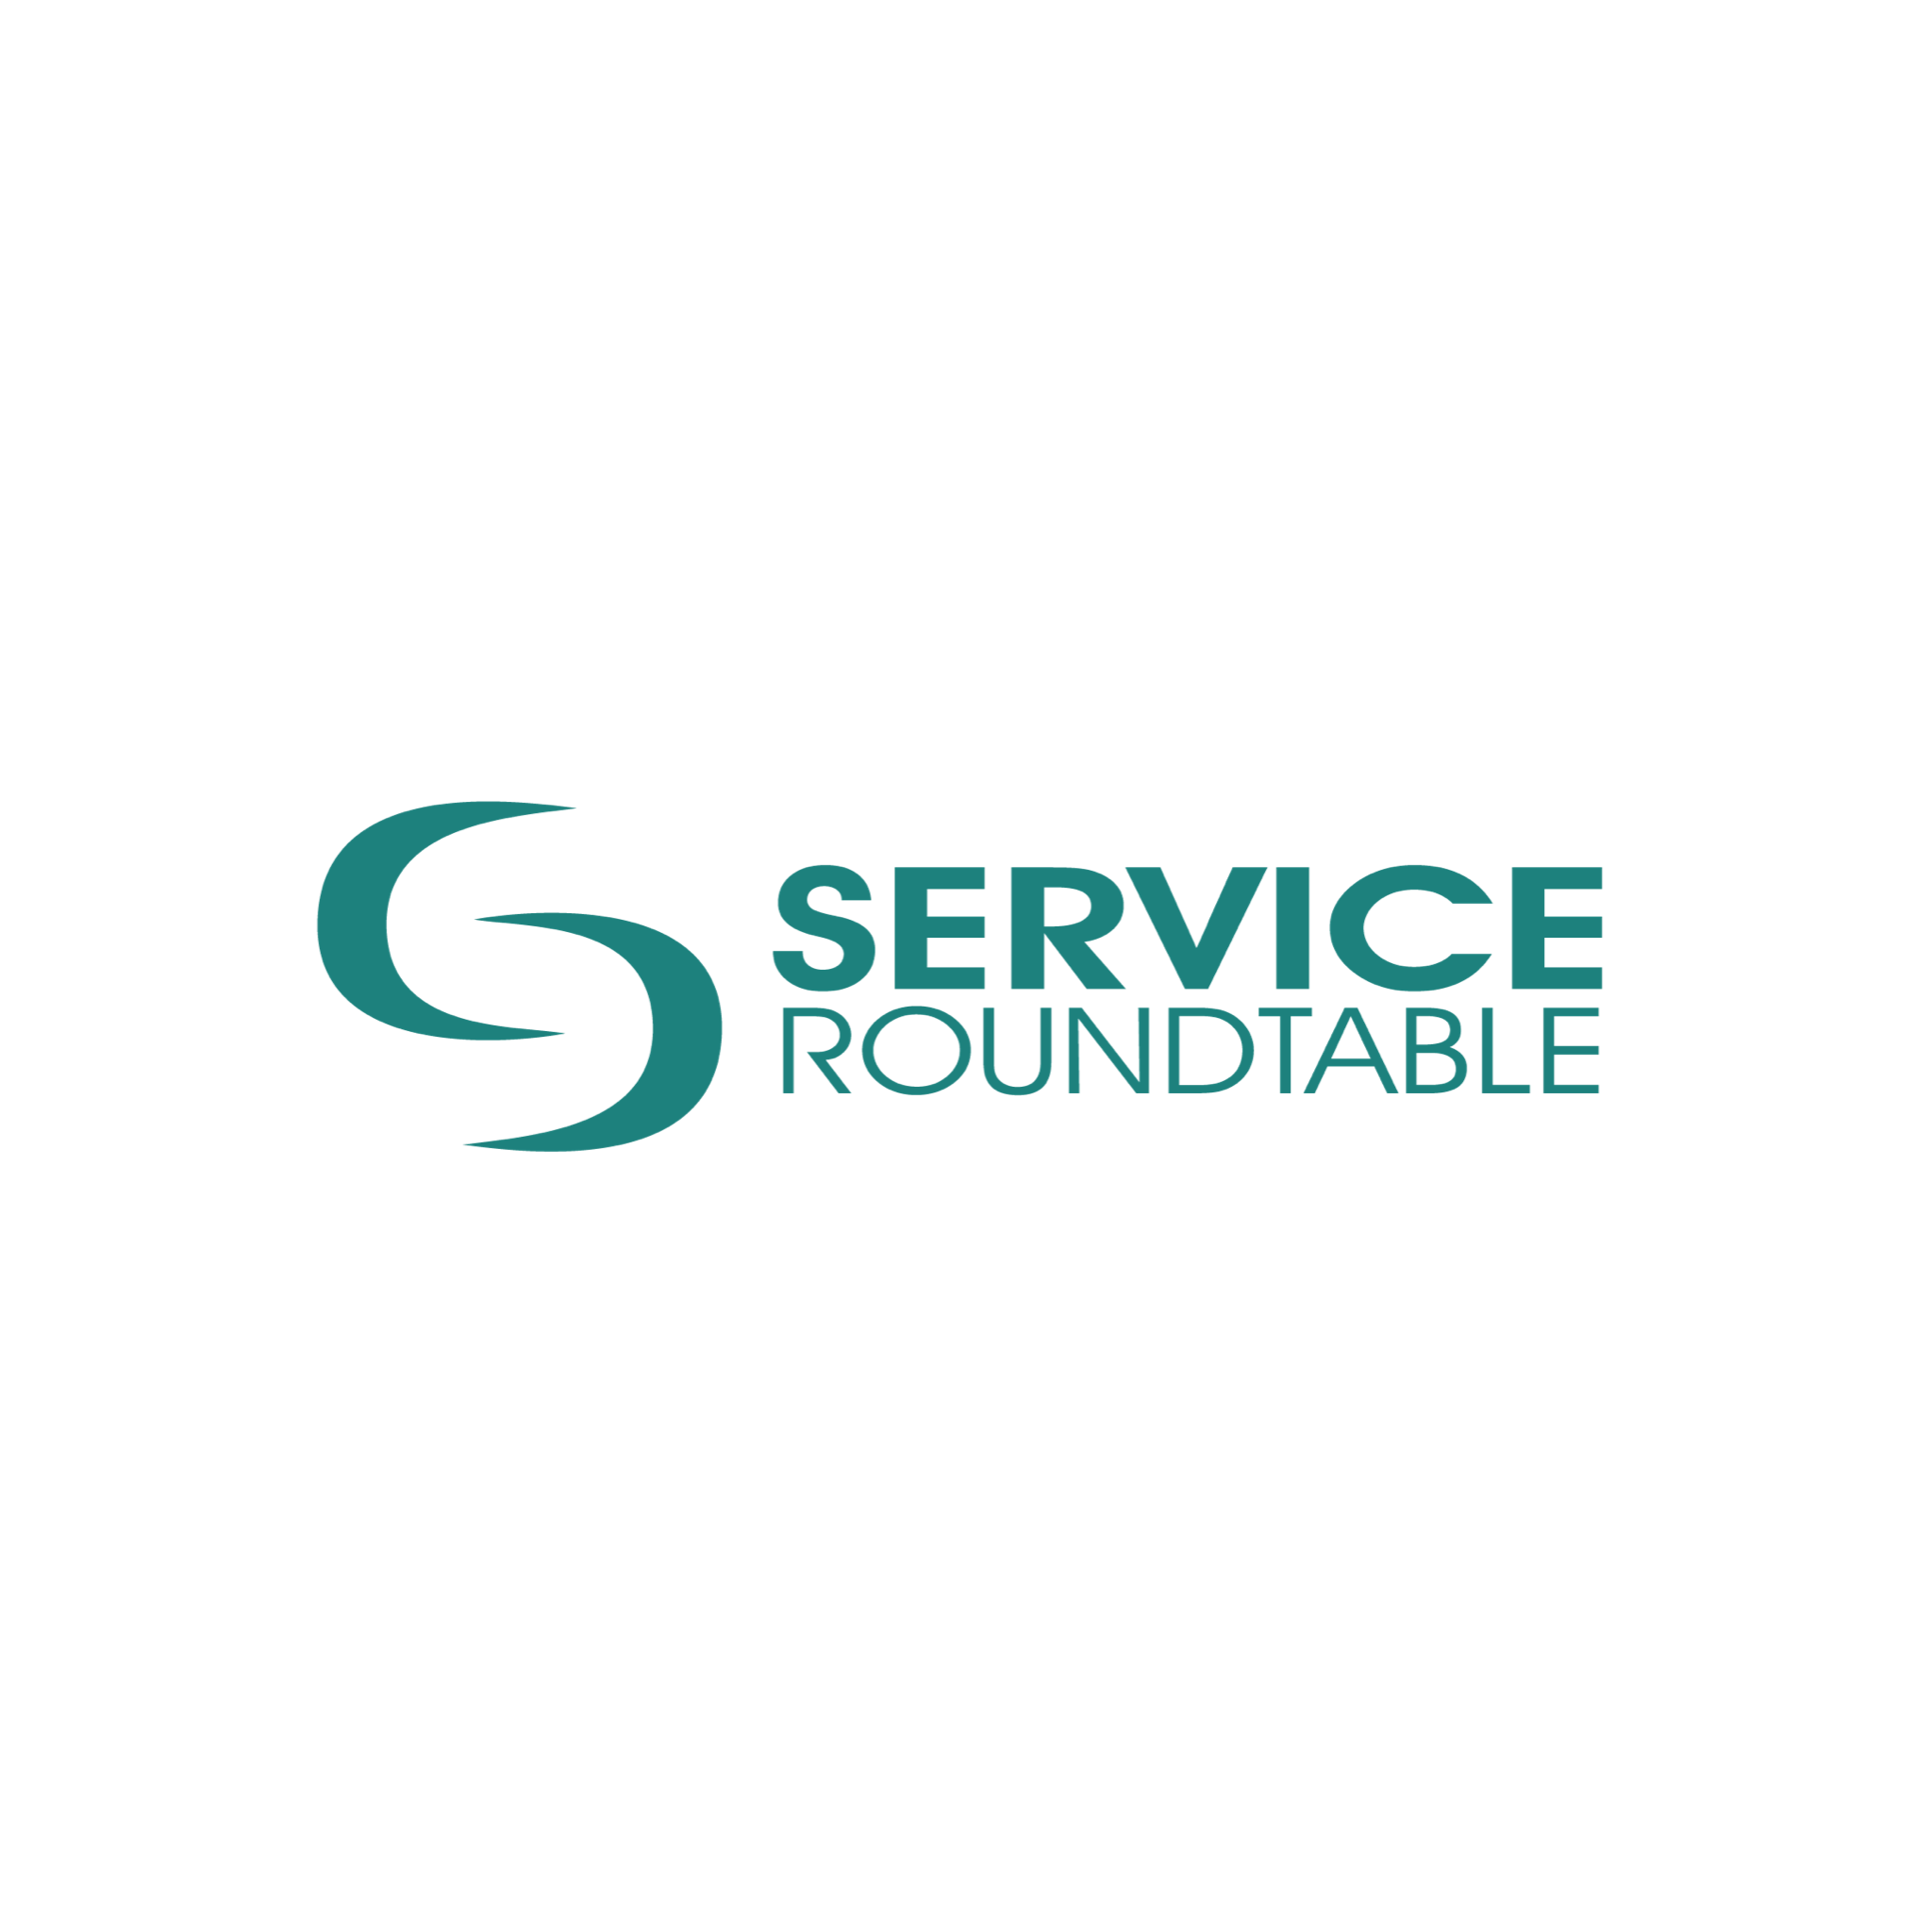 Service Roundtable Partner Description Page